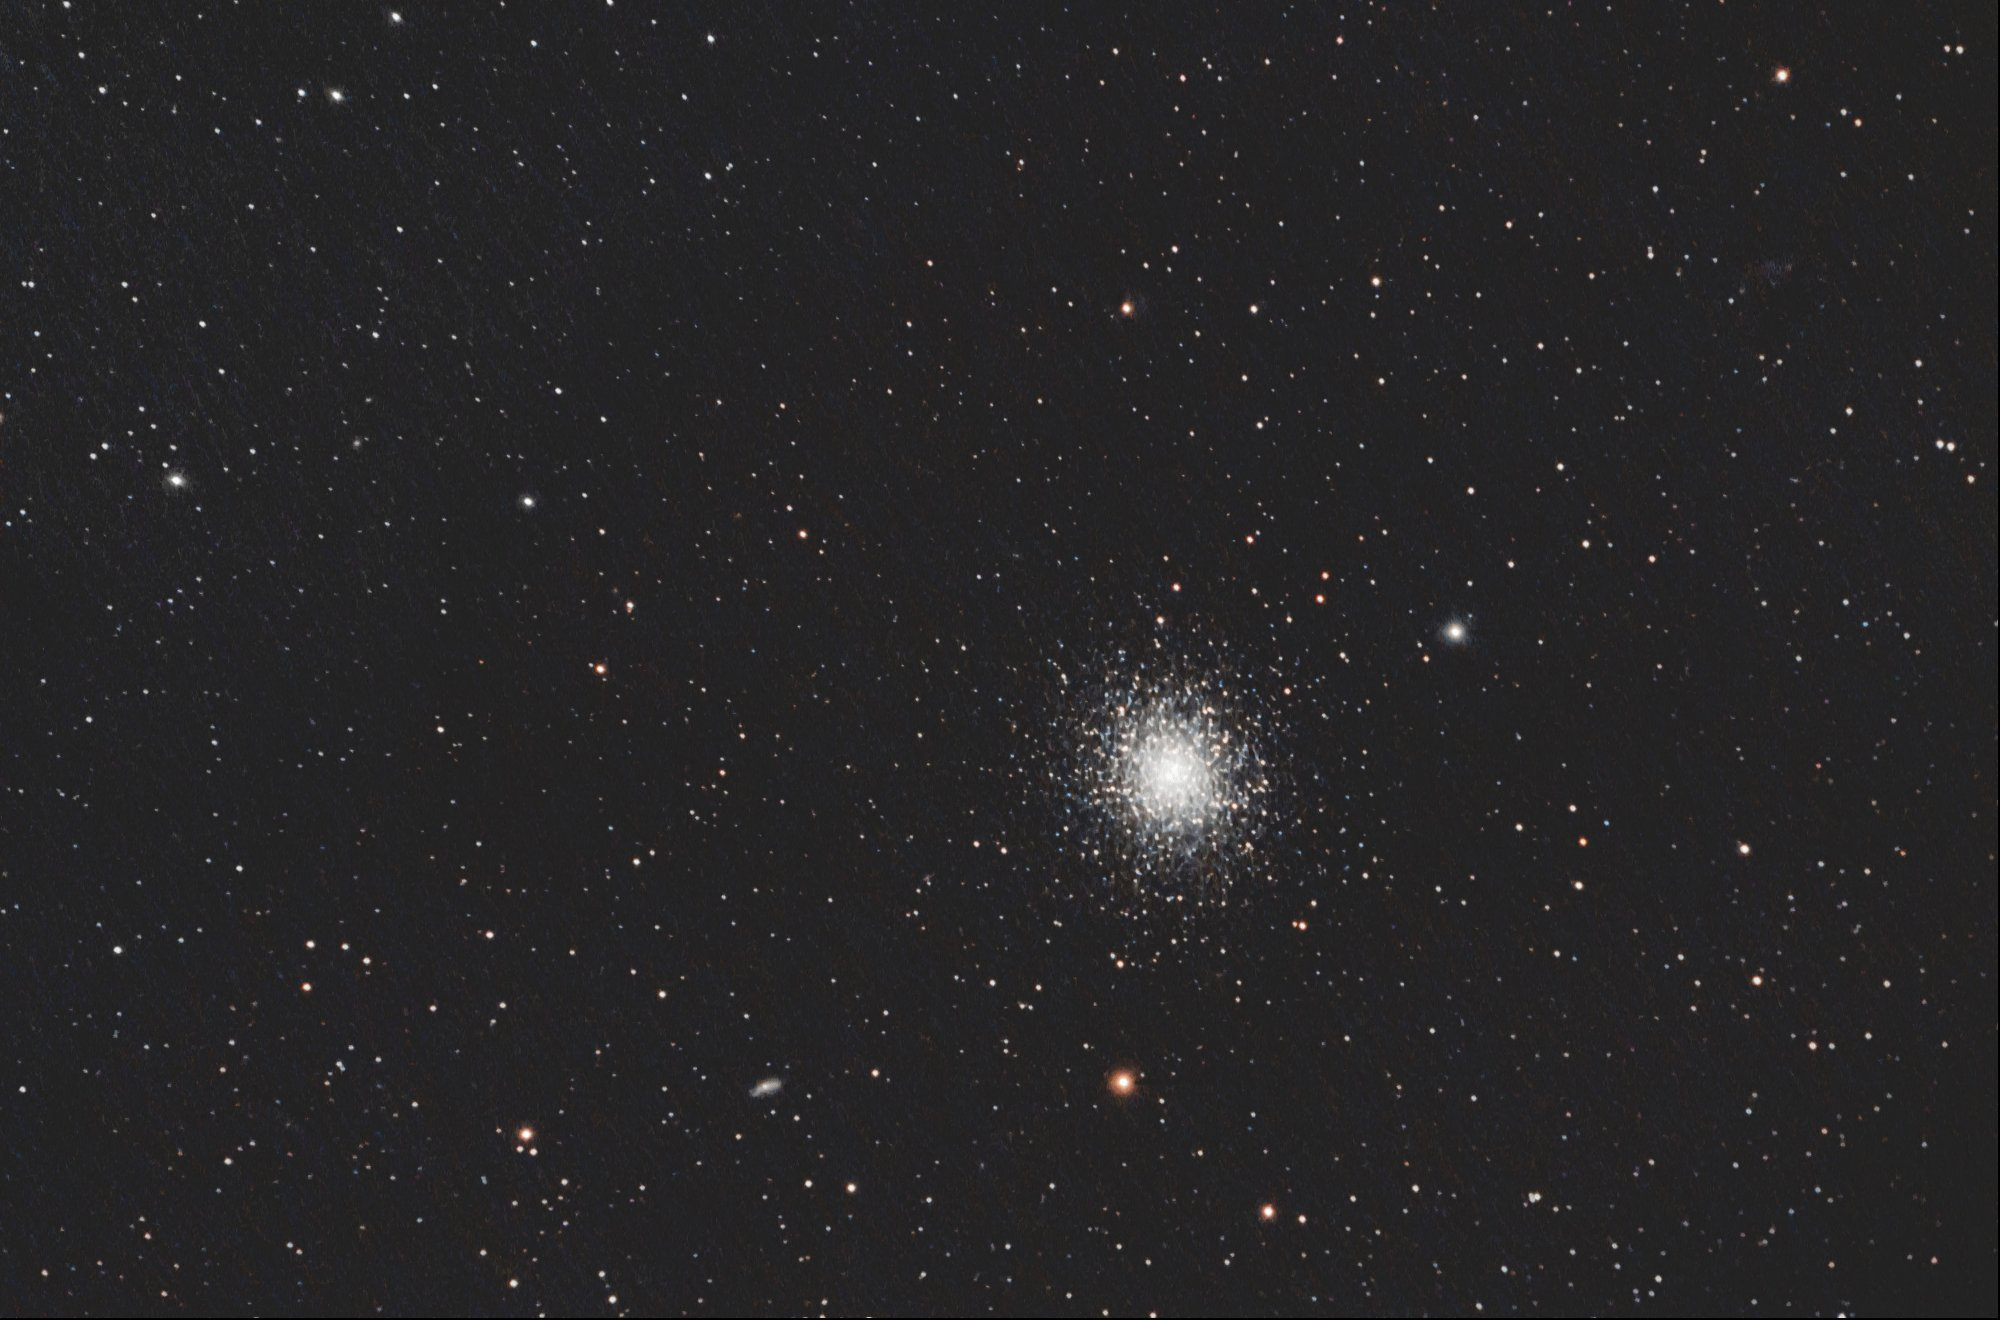 60be6888dc168_Messier13.thumb.jpg.8086169e96ddca56a4107e9d7beb9d7co0_2o1_1o1_1.jpg.2471b5a58bb507c95ca57a1ecb791c34.jpg